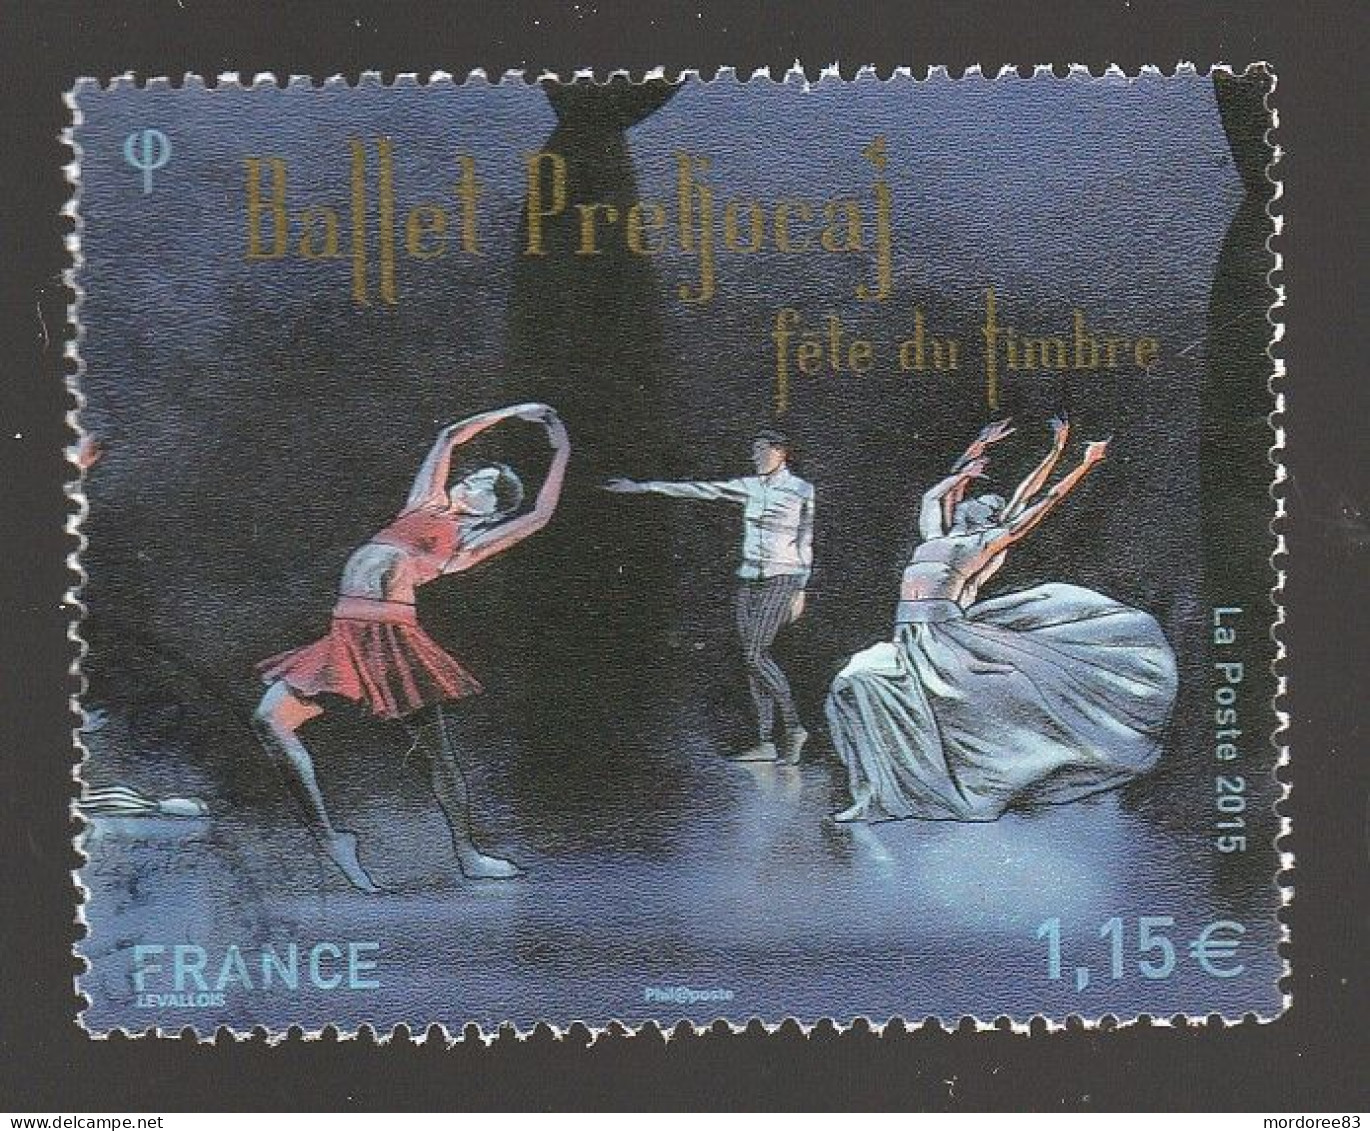 FRANCE 2015 BALLET PRELJOCAJ OBLITERE YT 4983 - Used Stamps